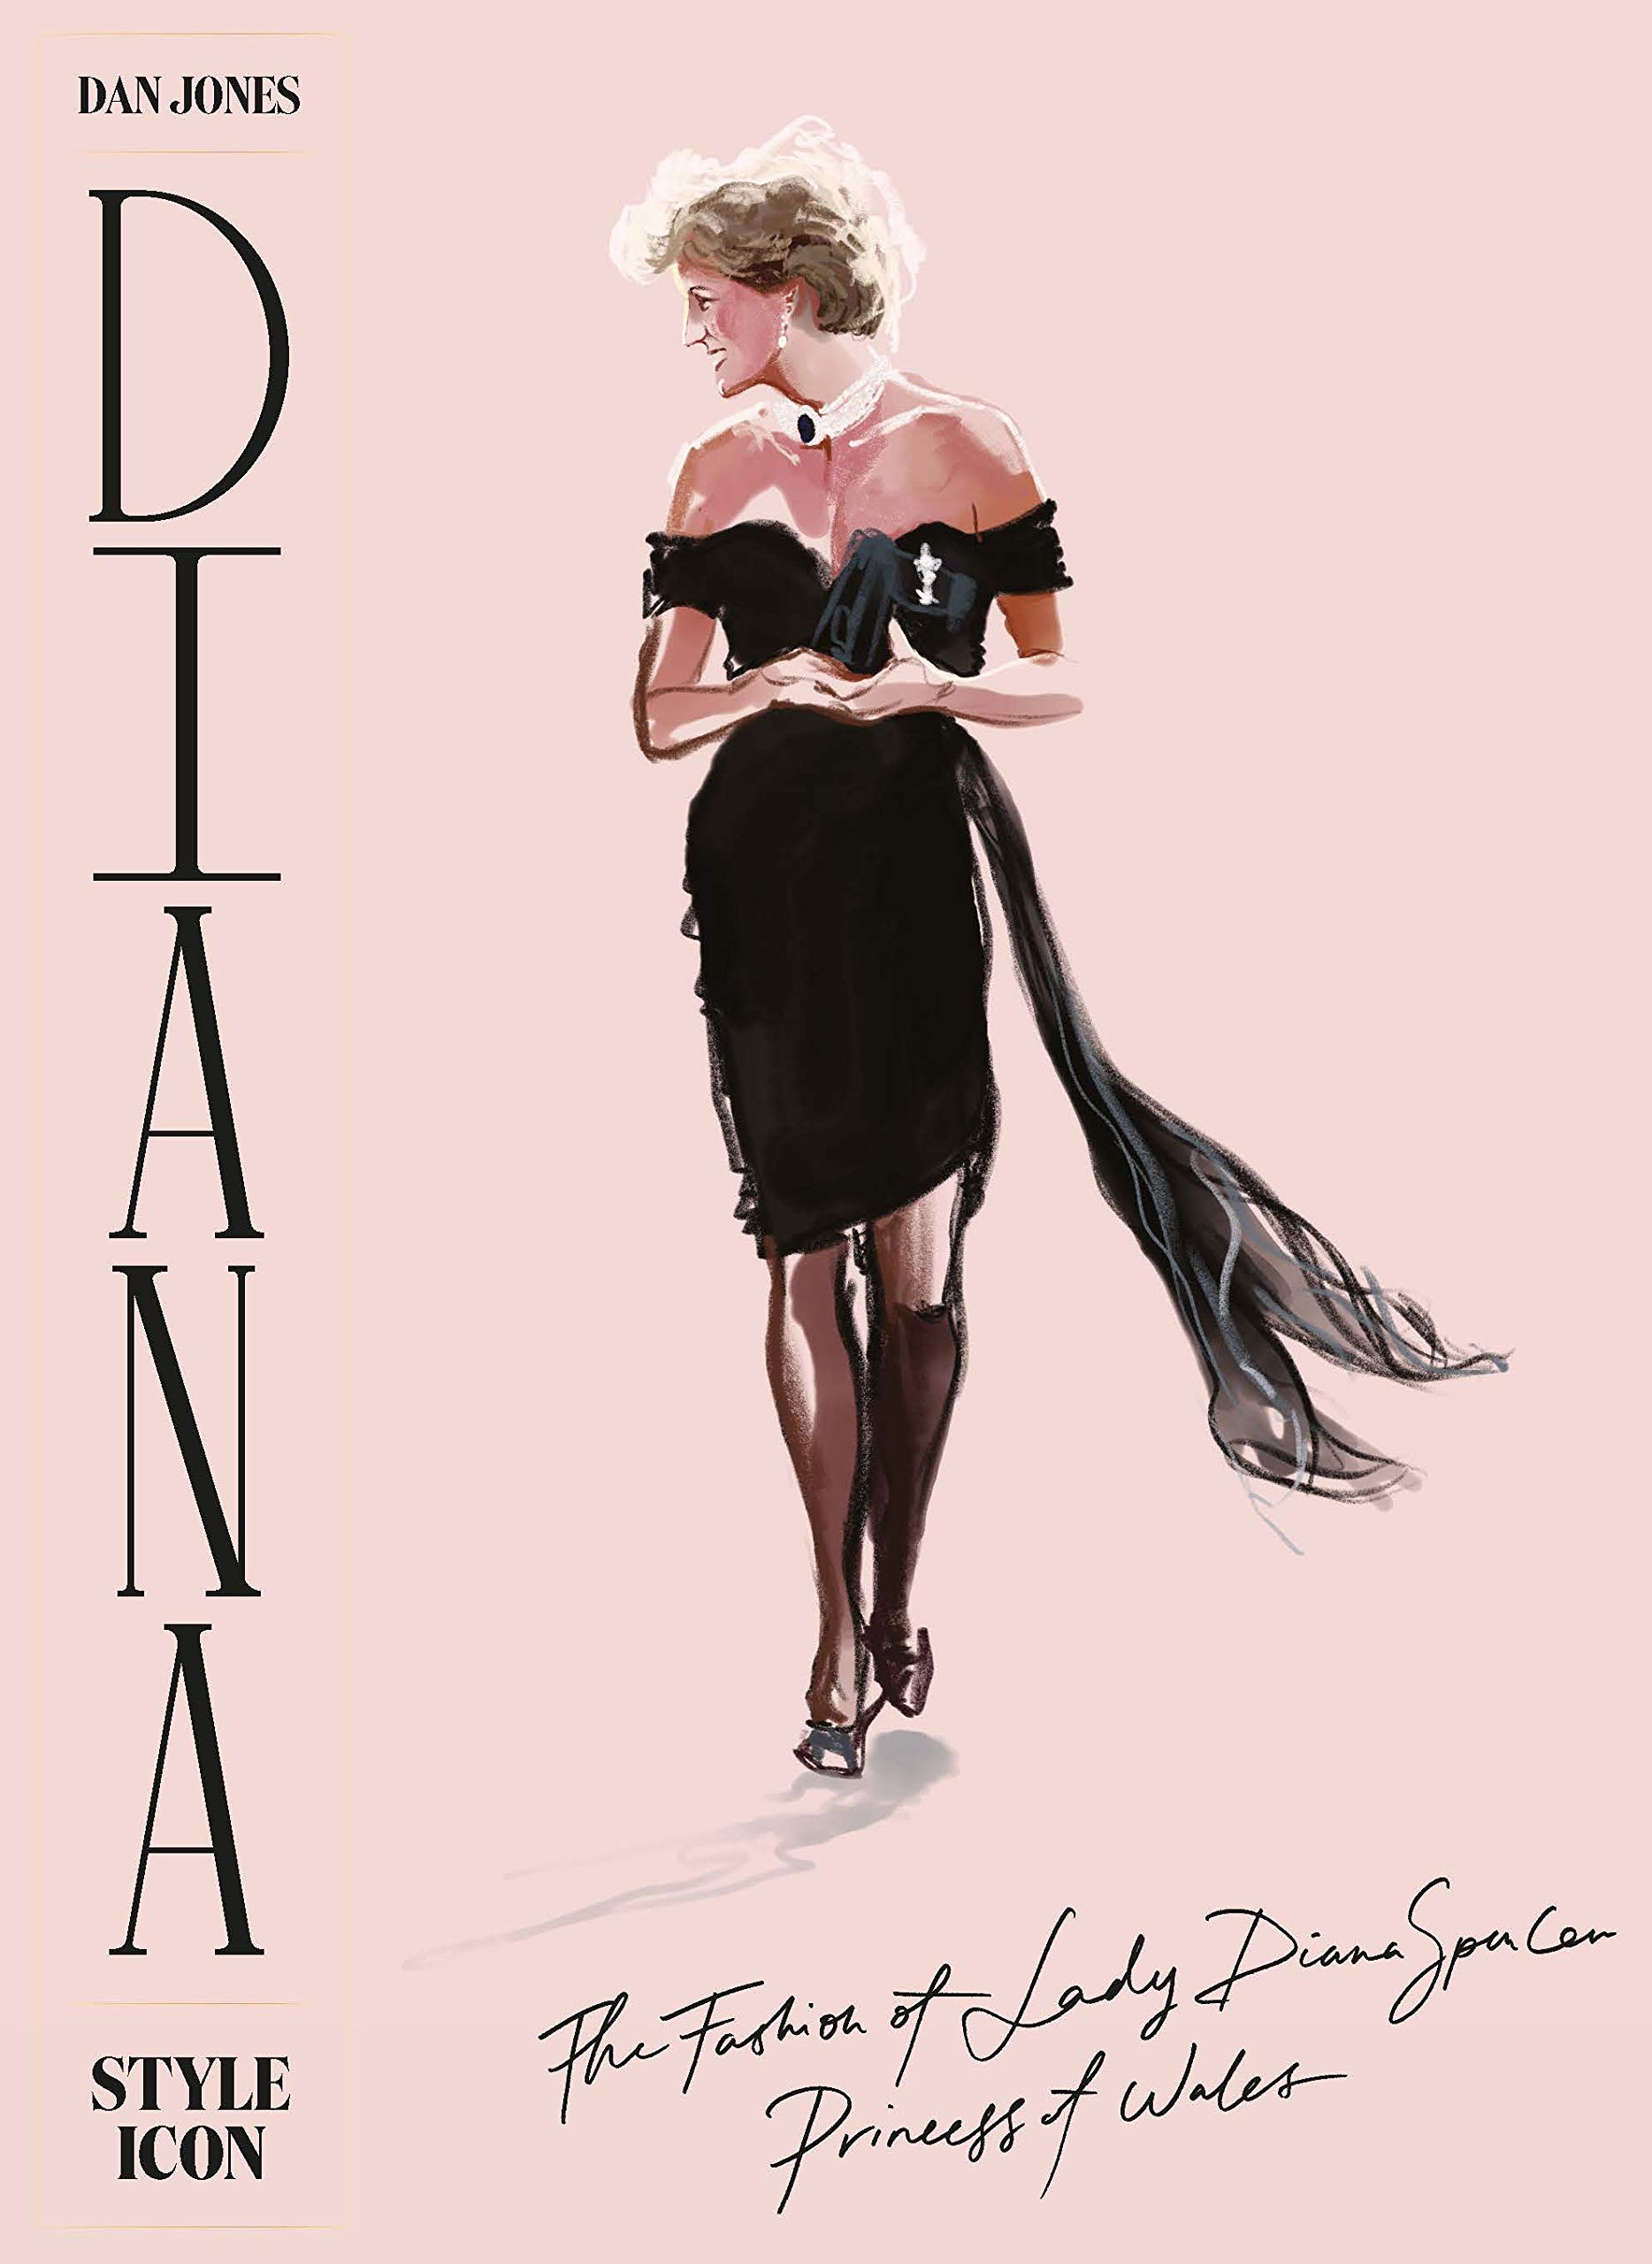 Princess Diana fashion book ideas for iconic costume looks ideas